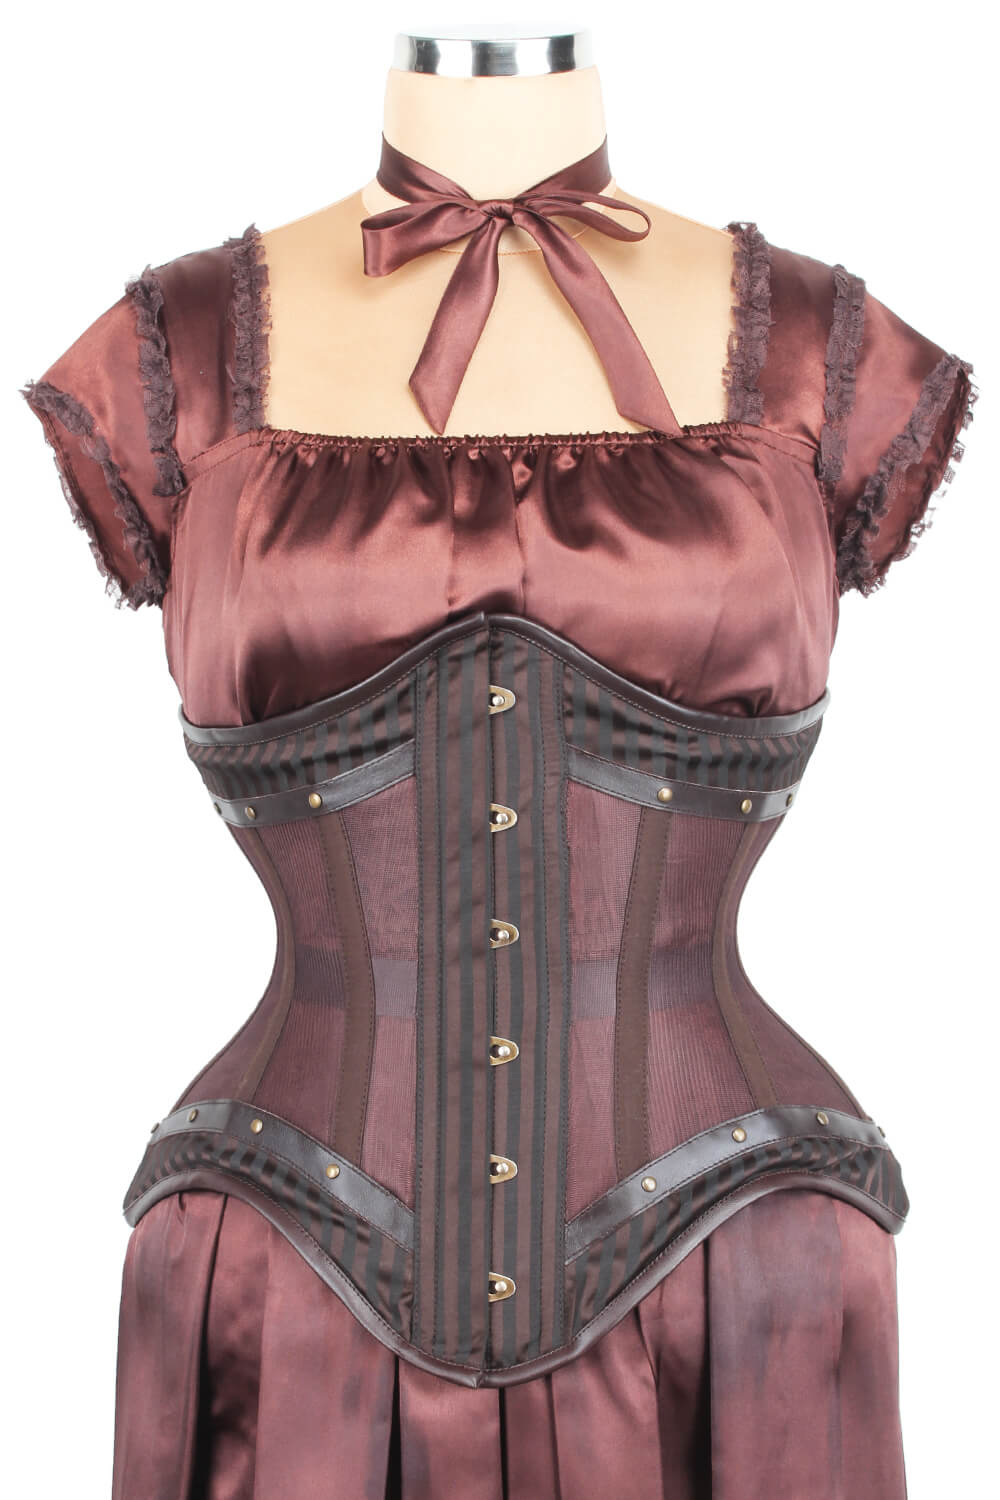 https://www.corsetdeal.com/cdn/shop/products/EL-221_F_Mesh_with_Brocade_Steampunk_Corset_ELC-501.jpg?v=1678178433